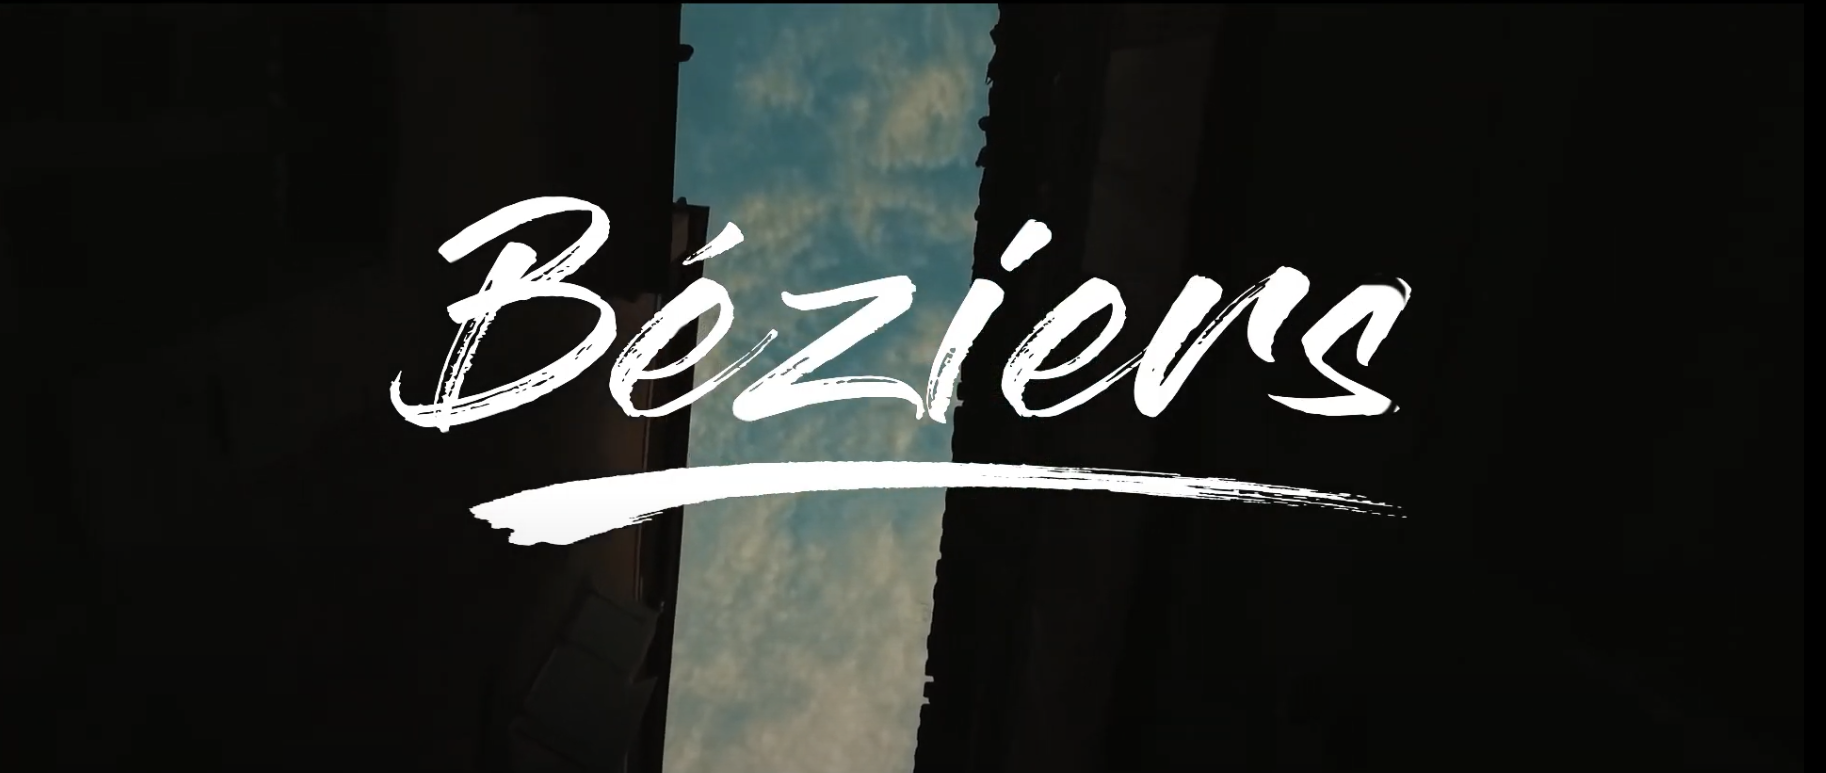 Featured image for “Découvrez la ville de Béziers en vidéo”